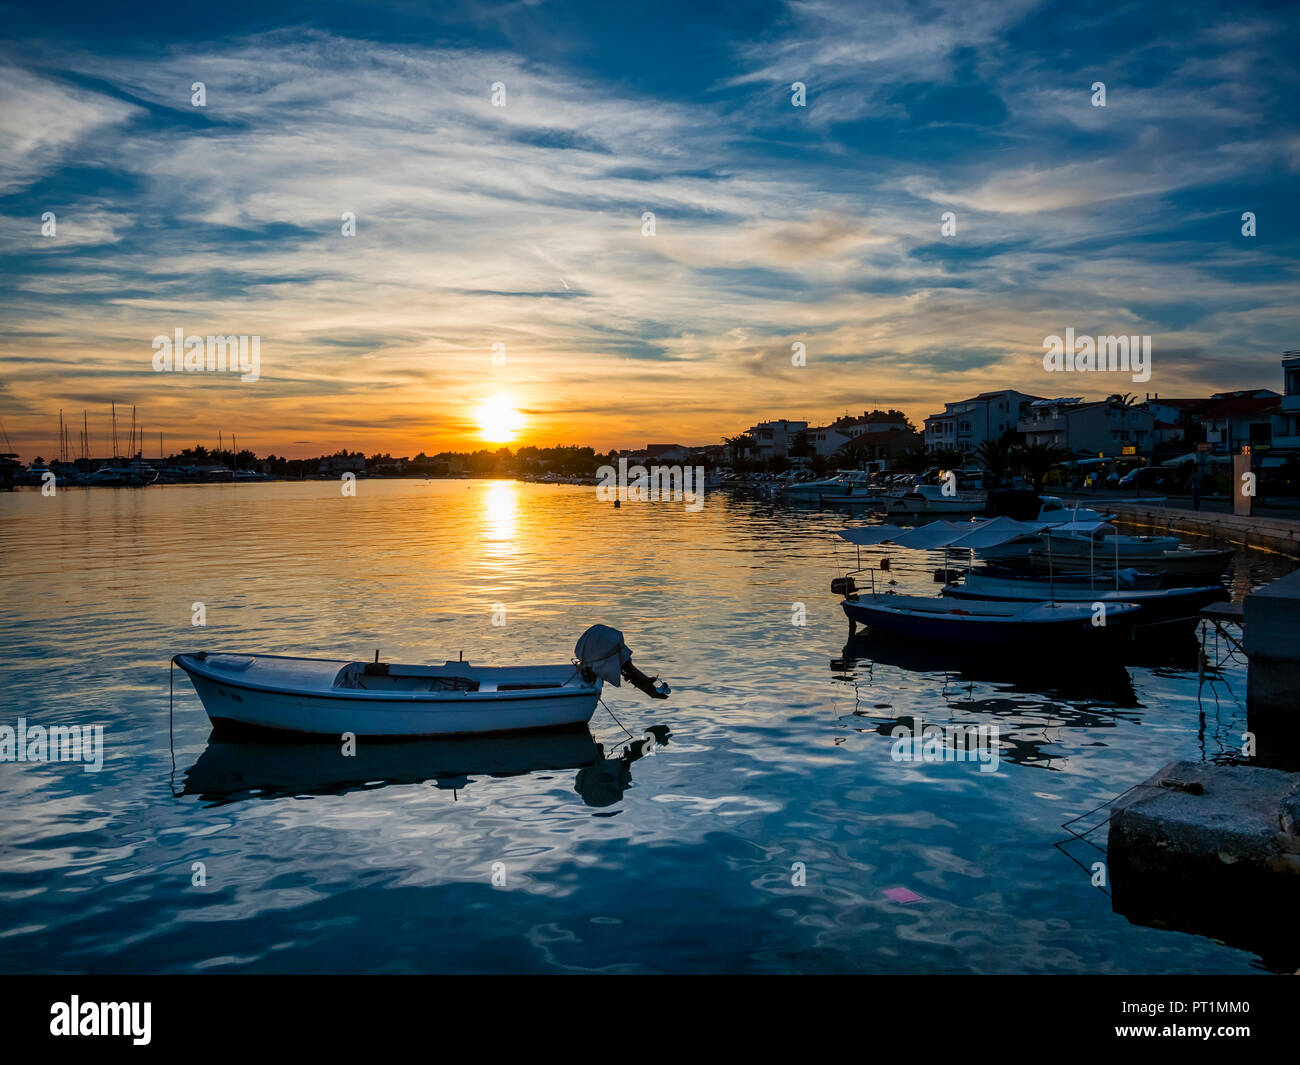 Croatia, Dalmatia, Rogoznica, Bay with marina and boats in foreground Stock Photo